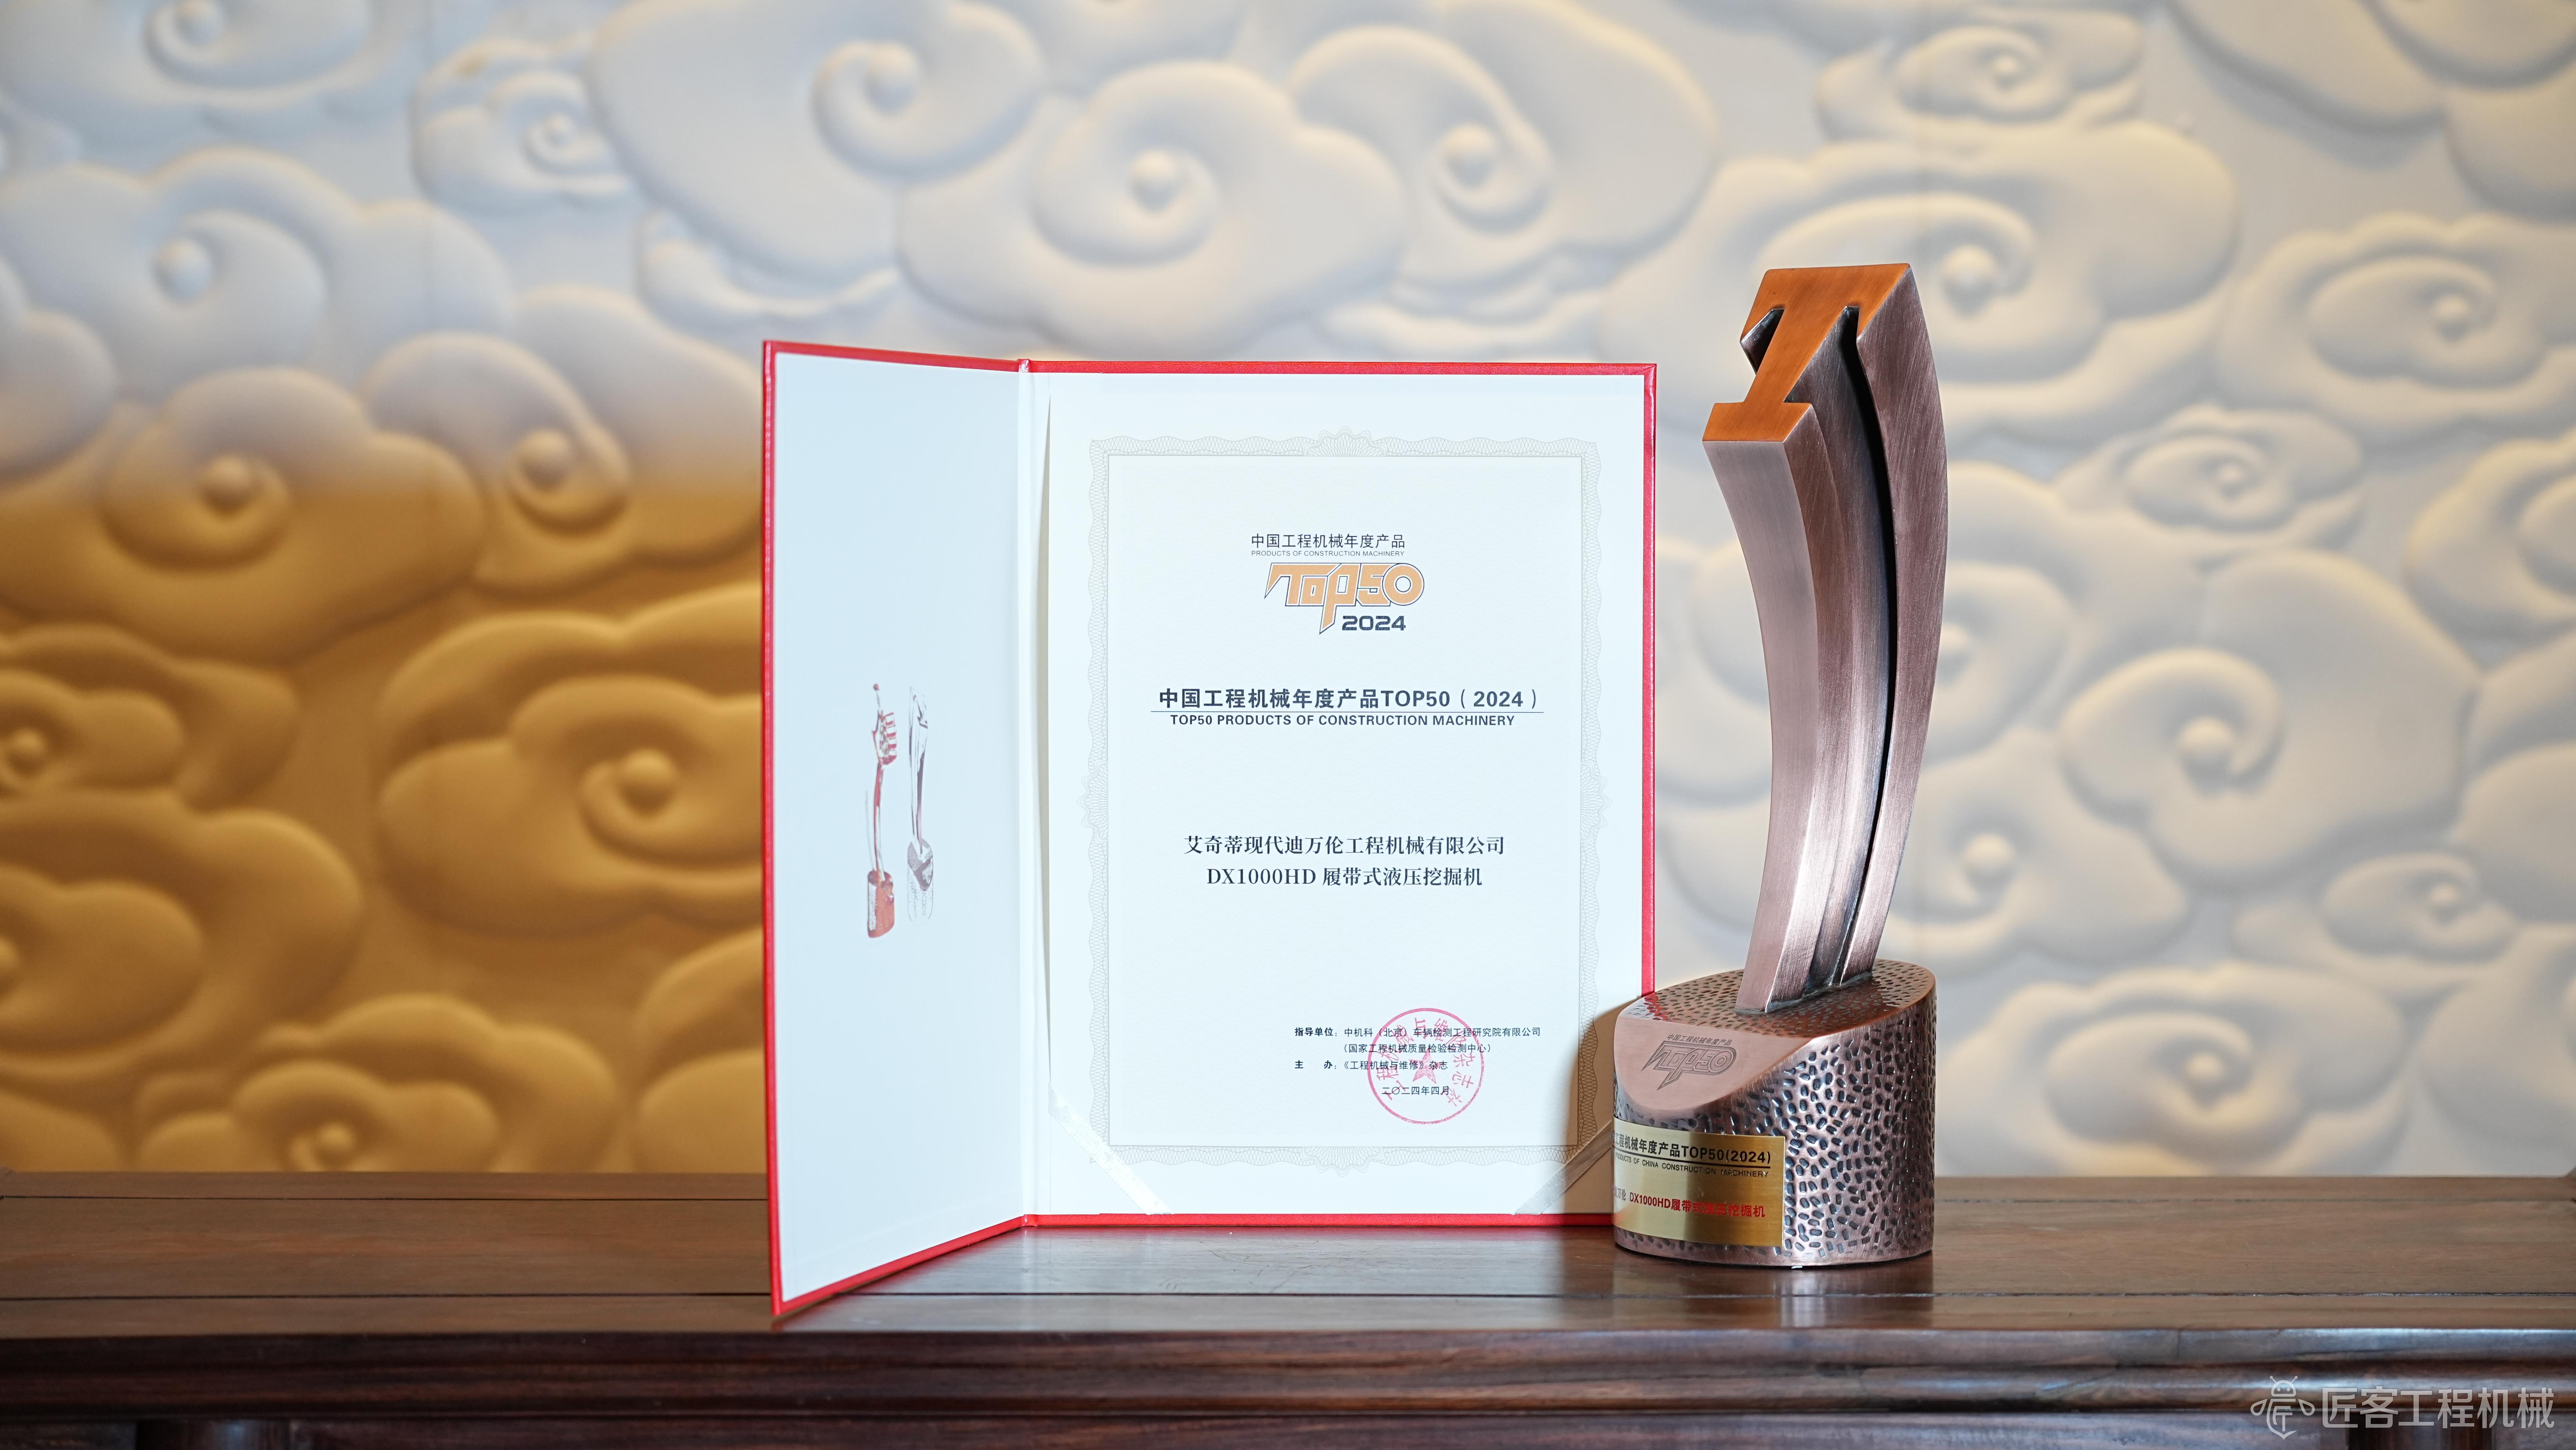 现代迪万伦 DX1000HD履带式液压挖掘机荣获2024中国工程机械年度产品TOP50奖